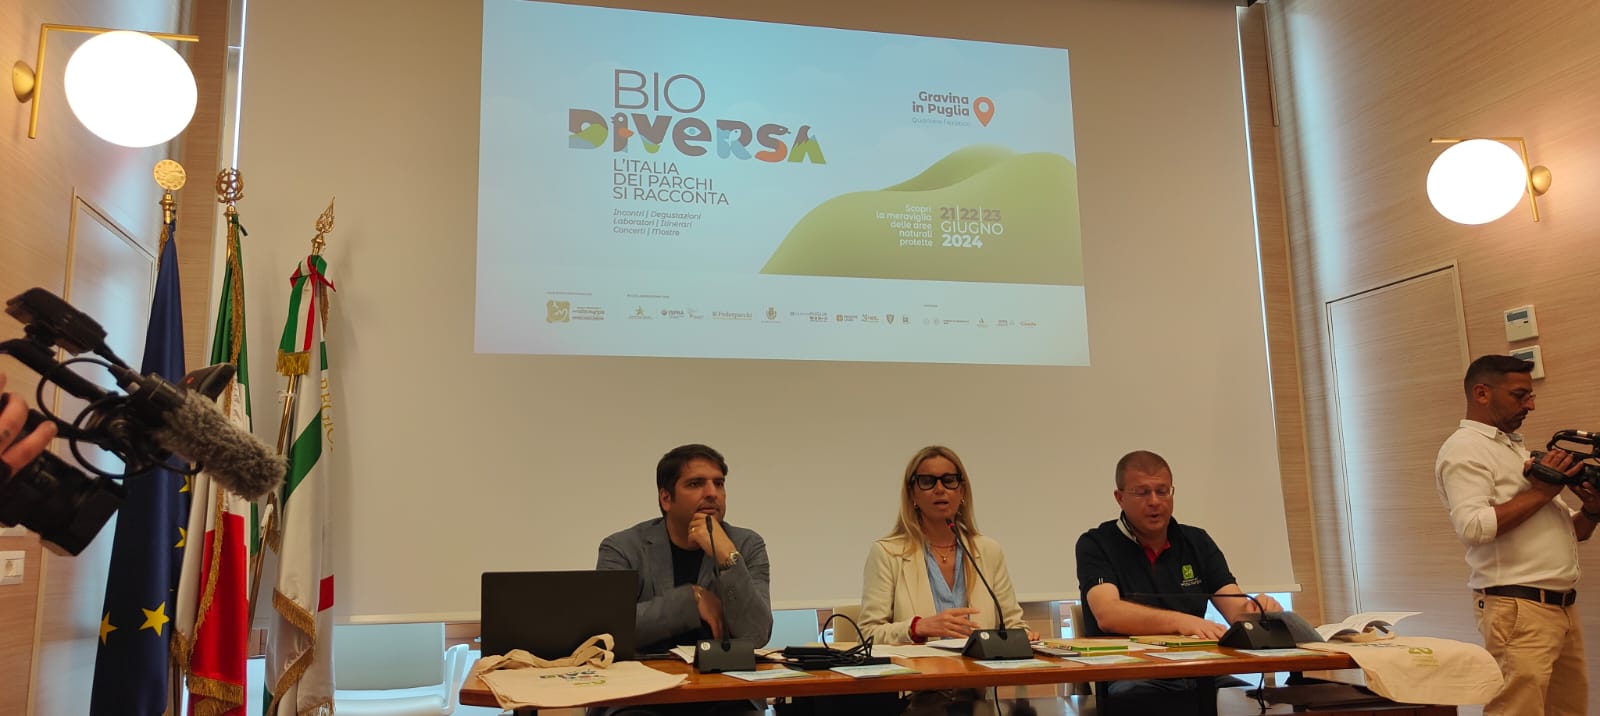 Galleria Turismo & ambiente con “Biodiversa. L’Italia dei parchi si racconta” a Gravina in Puglia - Diapositiva 1 di 6